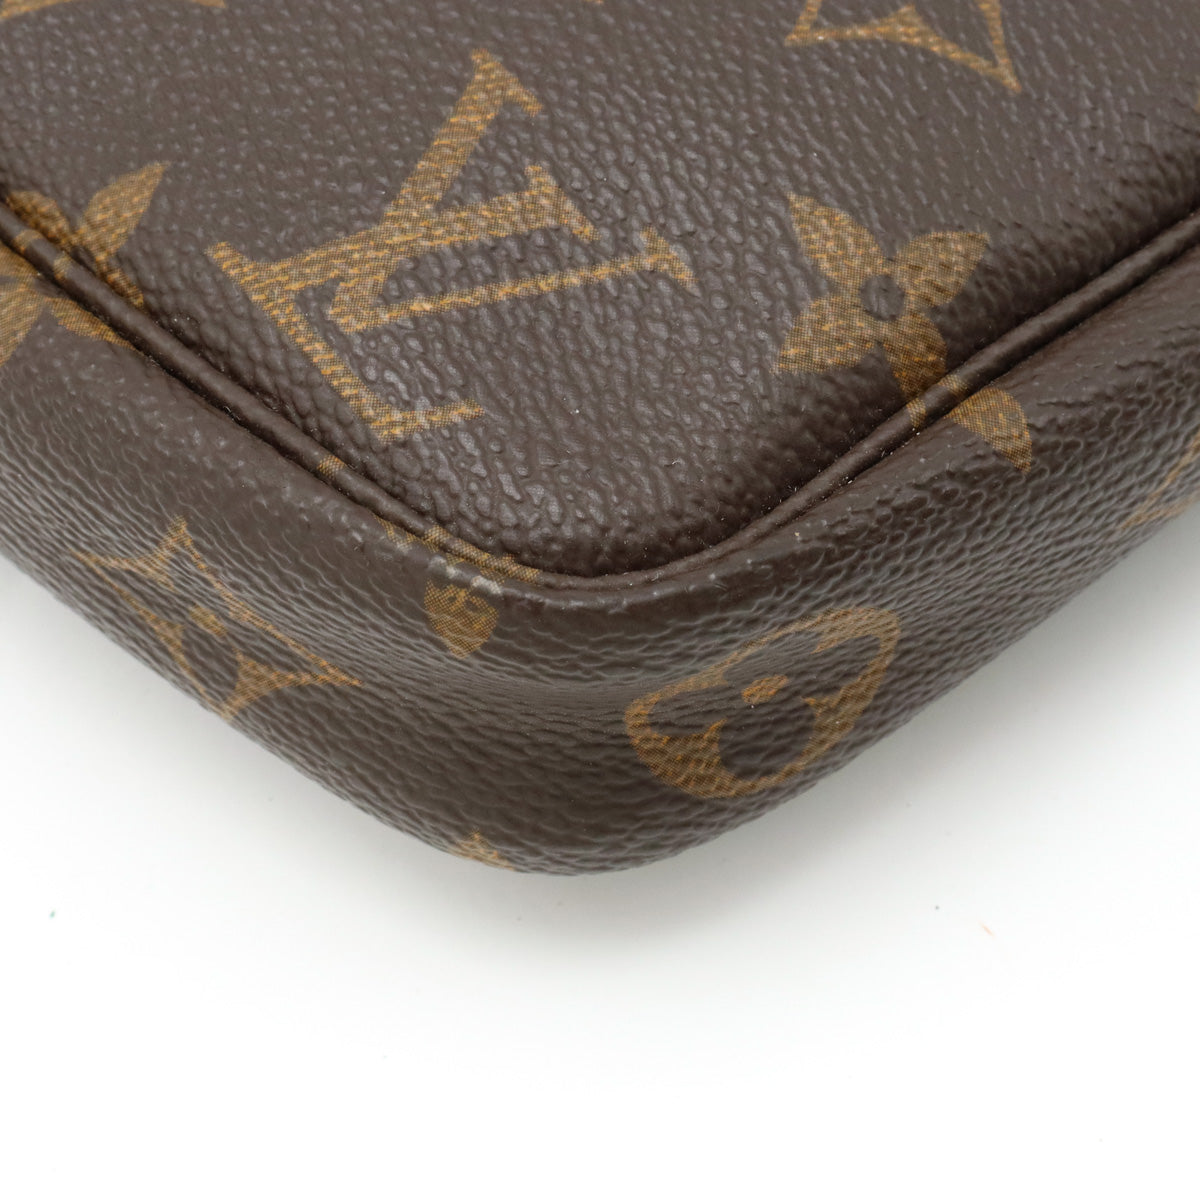 Louis Vuitton Monogram Pochette Accessory Pouch Handbag M51980